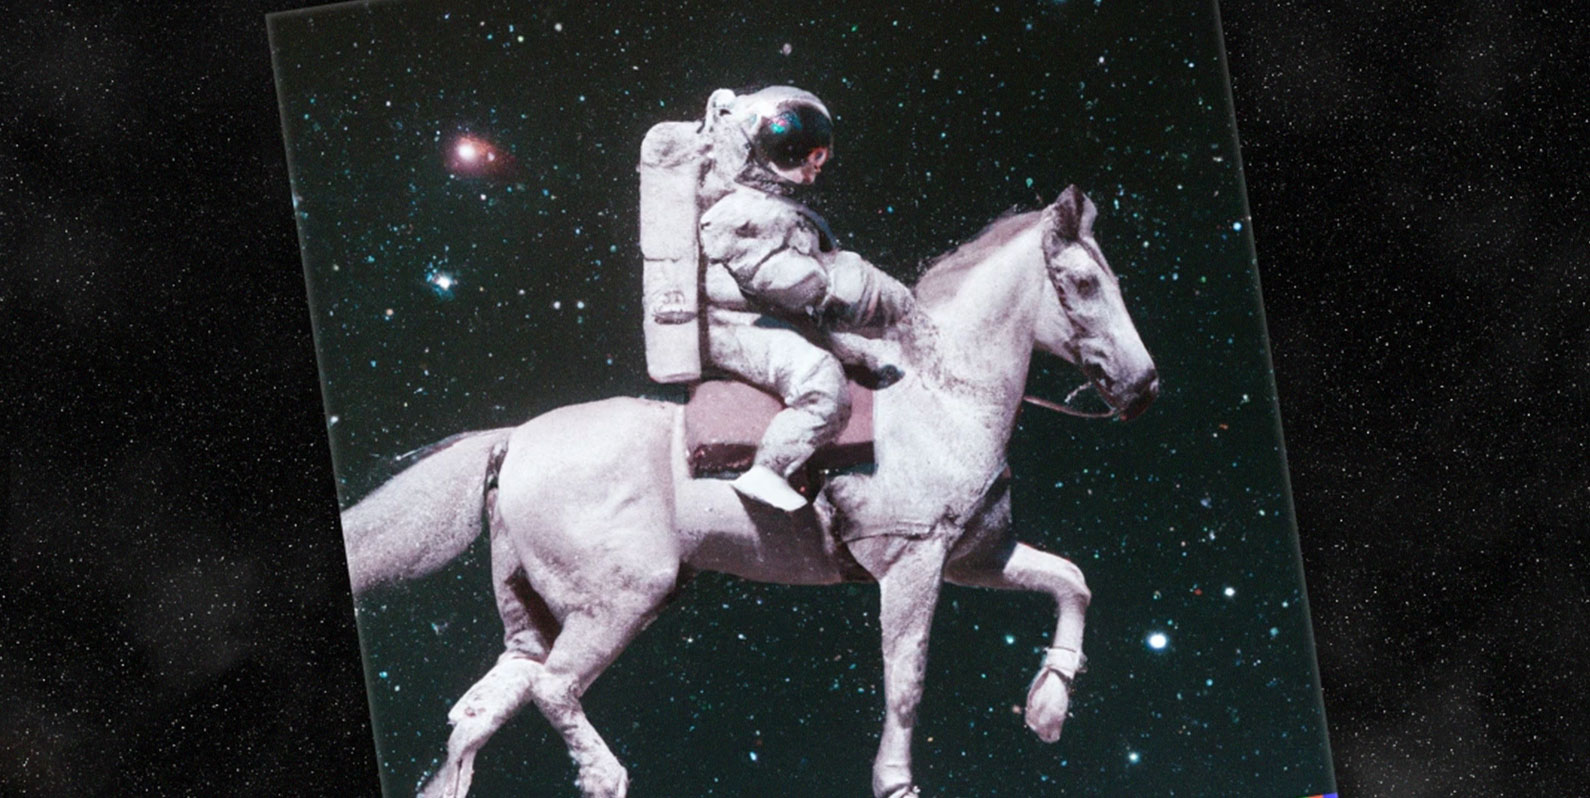 Este astronauta a cavalo é um marco para a Inteligência Artificial em sua jornada pela compreensão do mundo